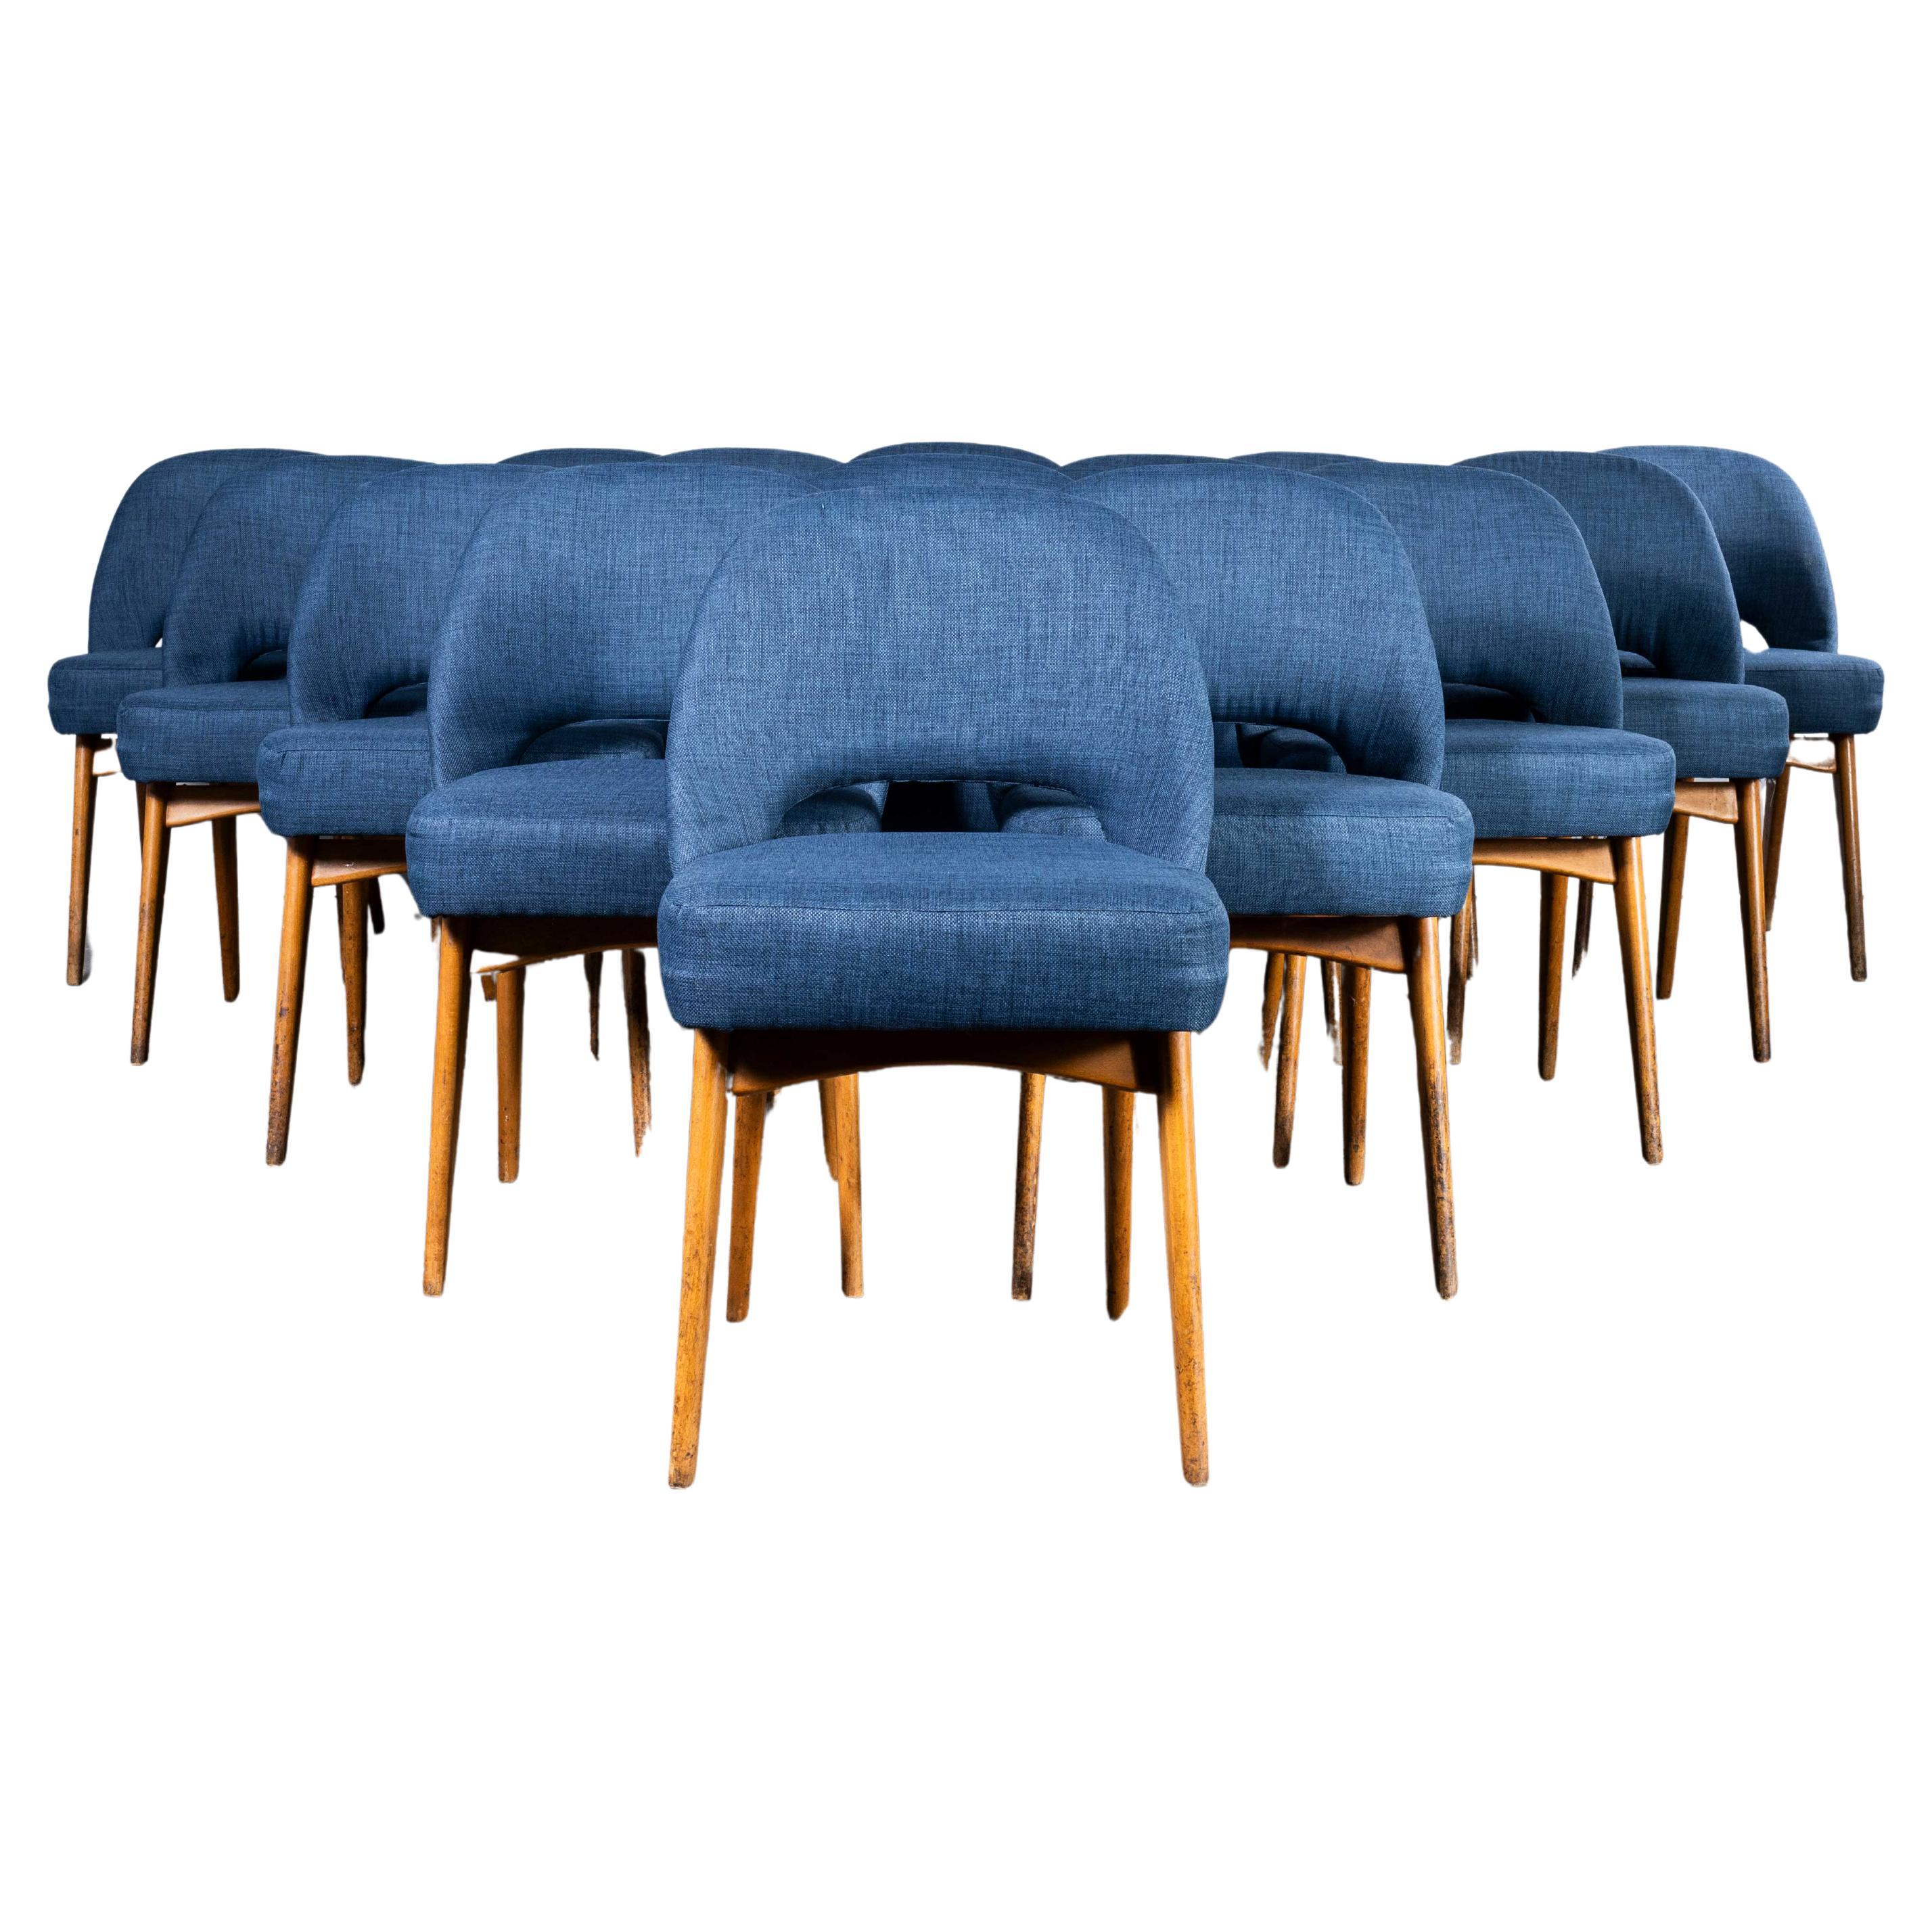 Original 1960's Upholstered Ben Dining Chairs - Bonne quantité disponible